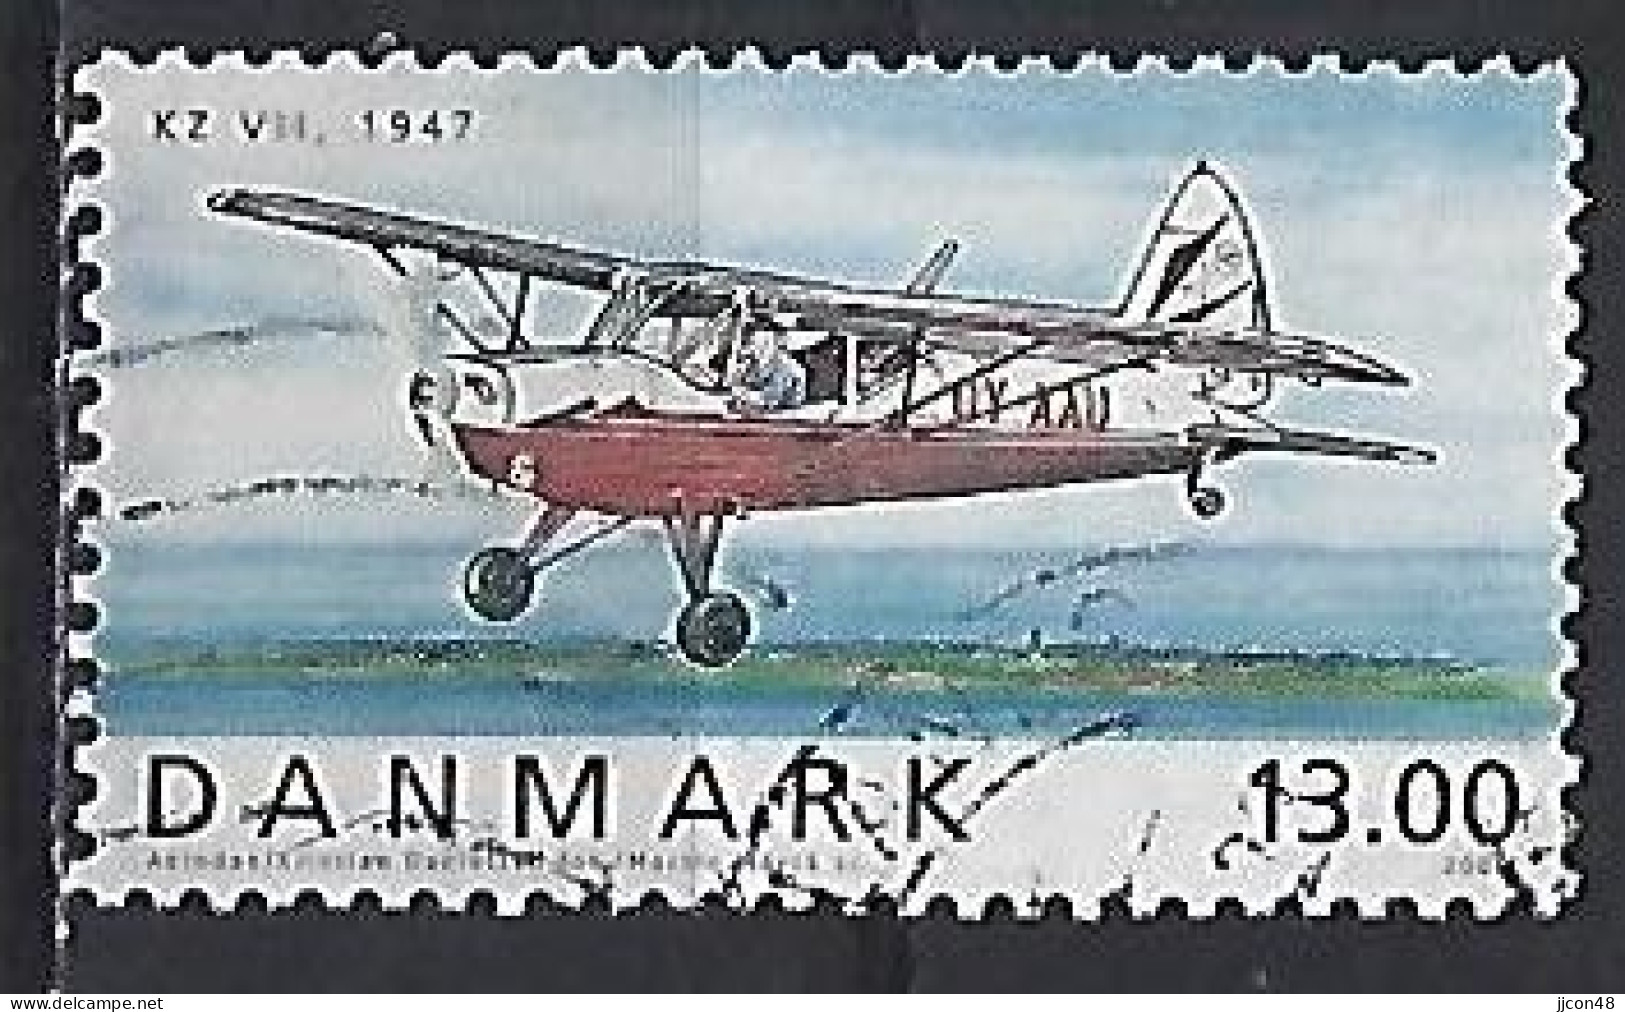 Denmark  2006  Danish Aircraft  (o) Mi.1443 - Oblitérés